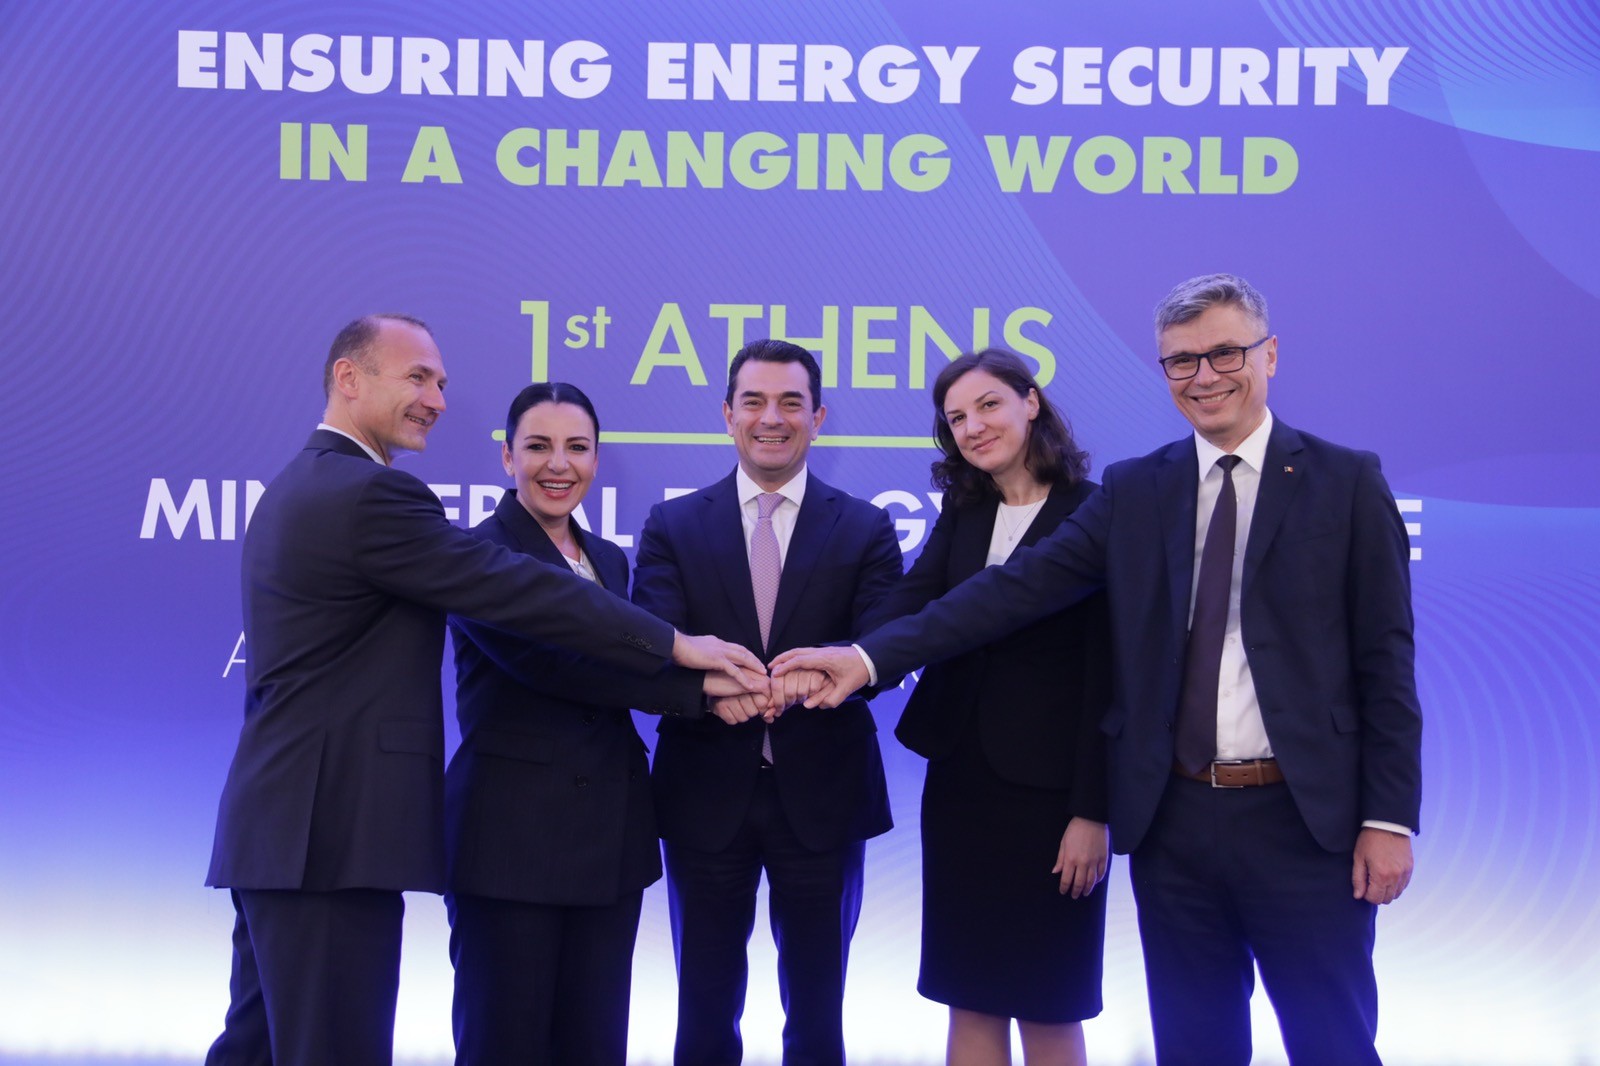 Garantimi i sigurisë energjetike, prioritet për vendet e Evropës jug-lindore 